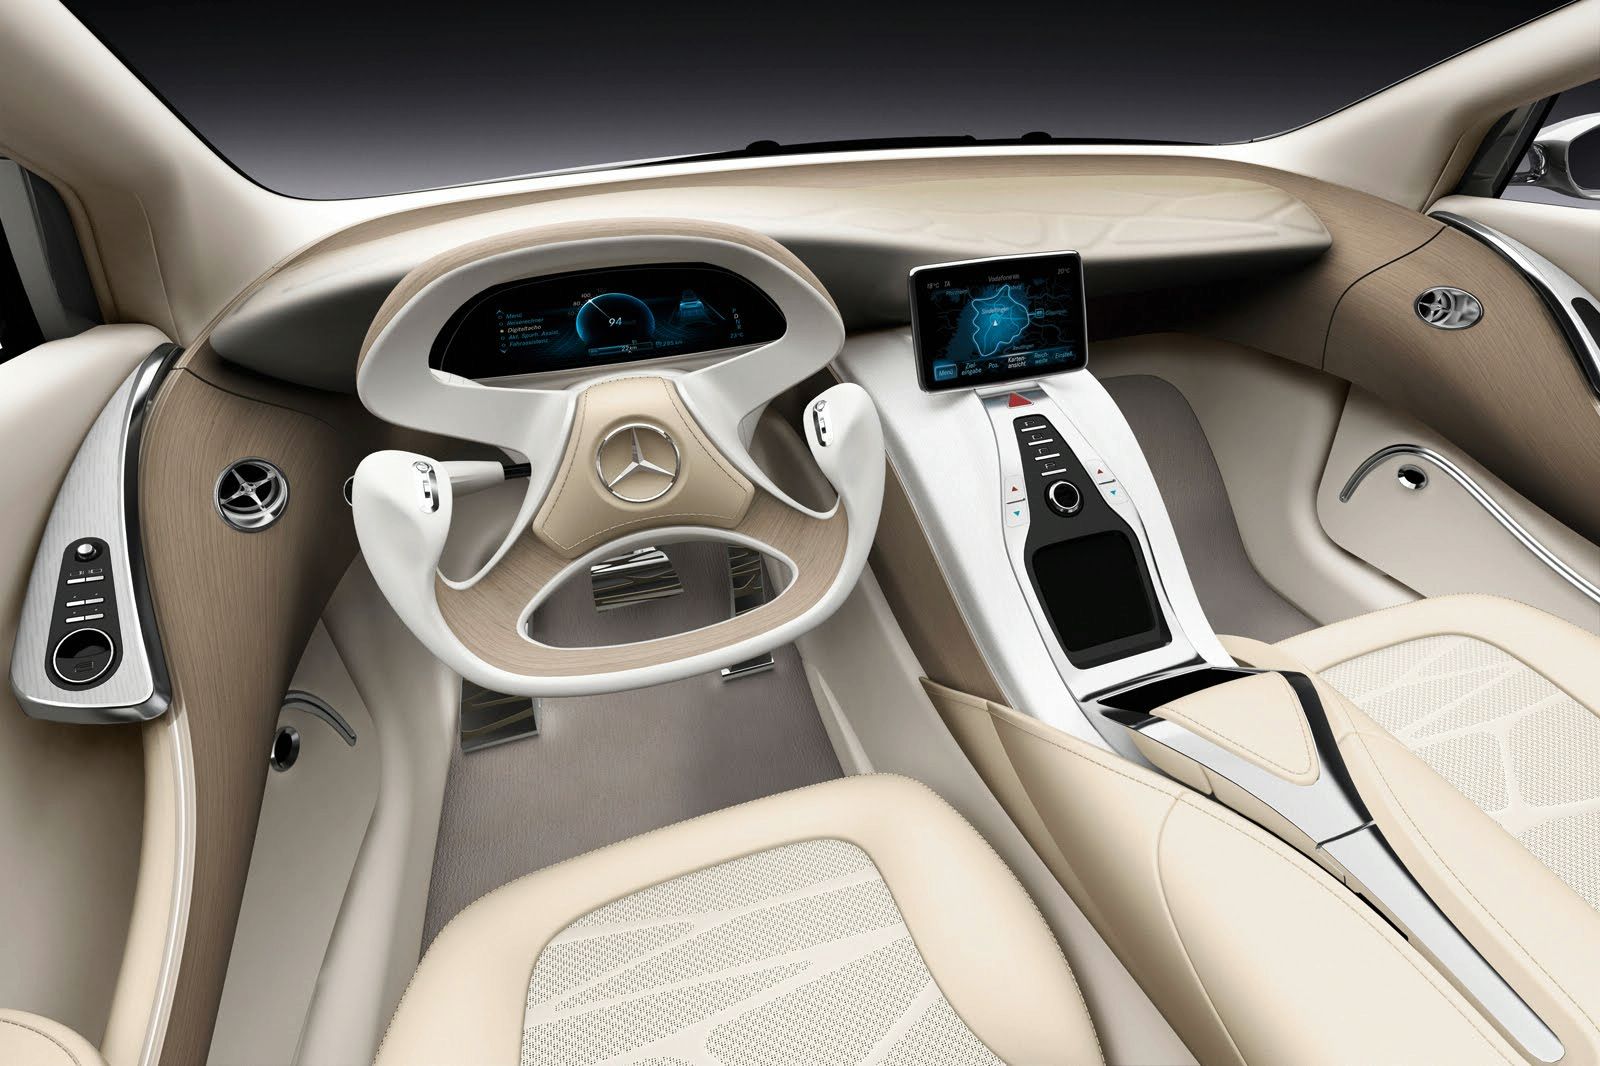 Mercedes BLS Concept